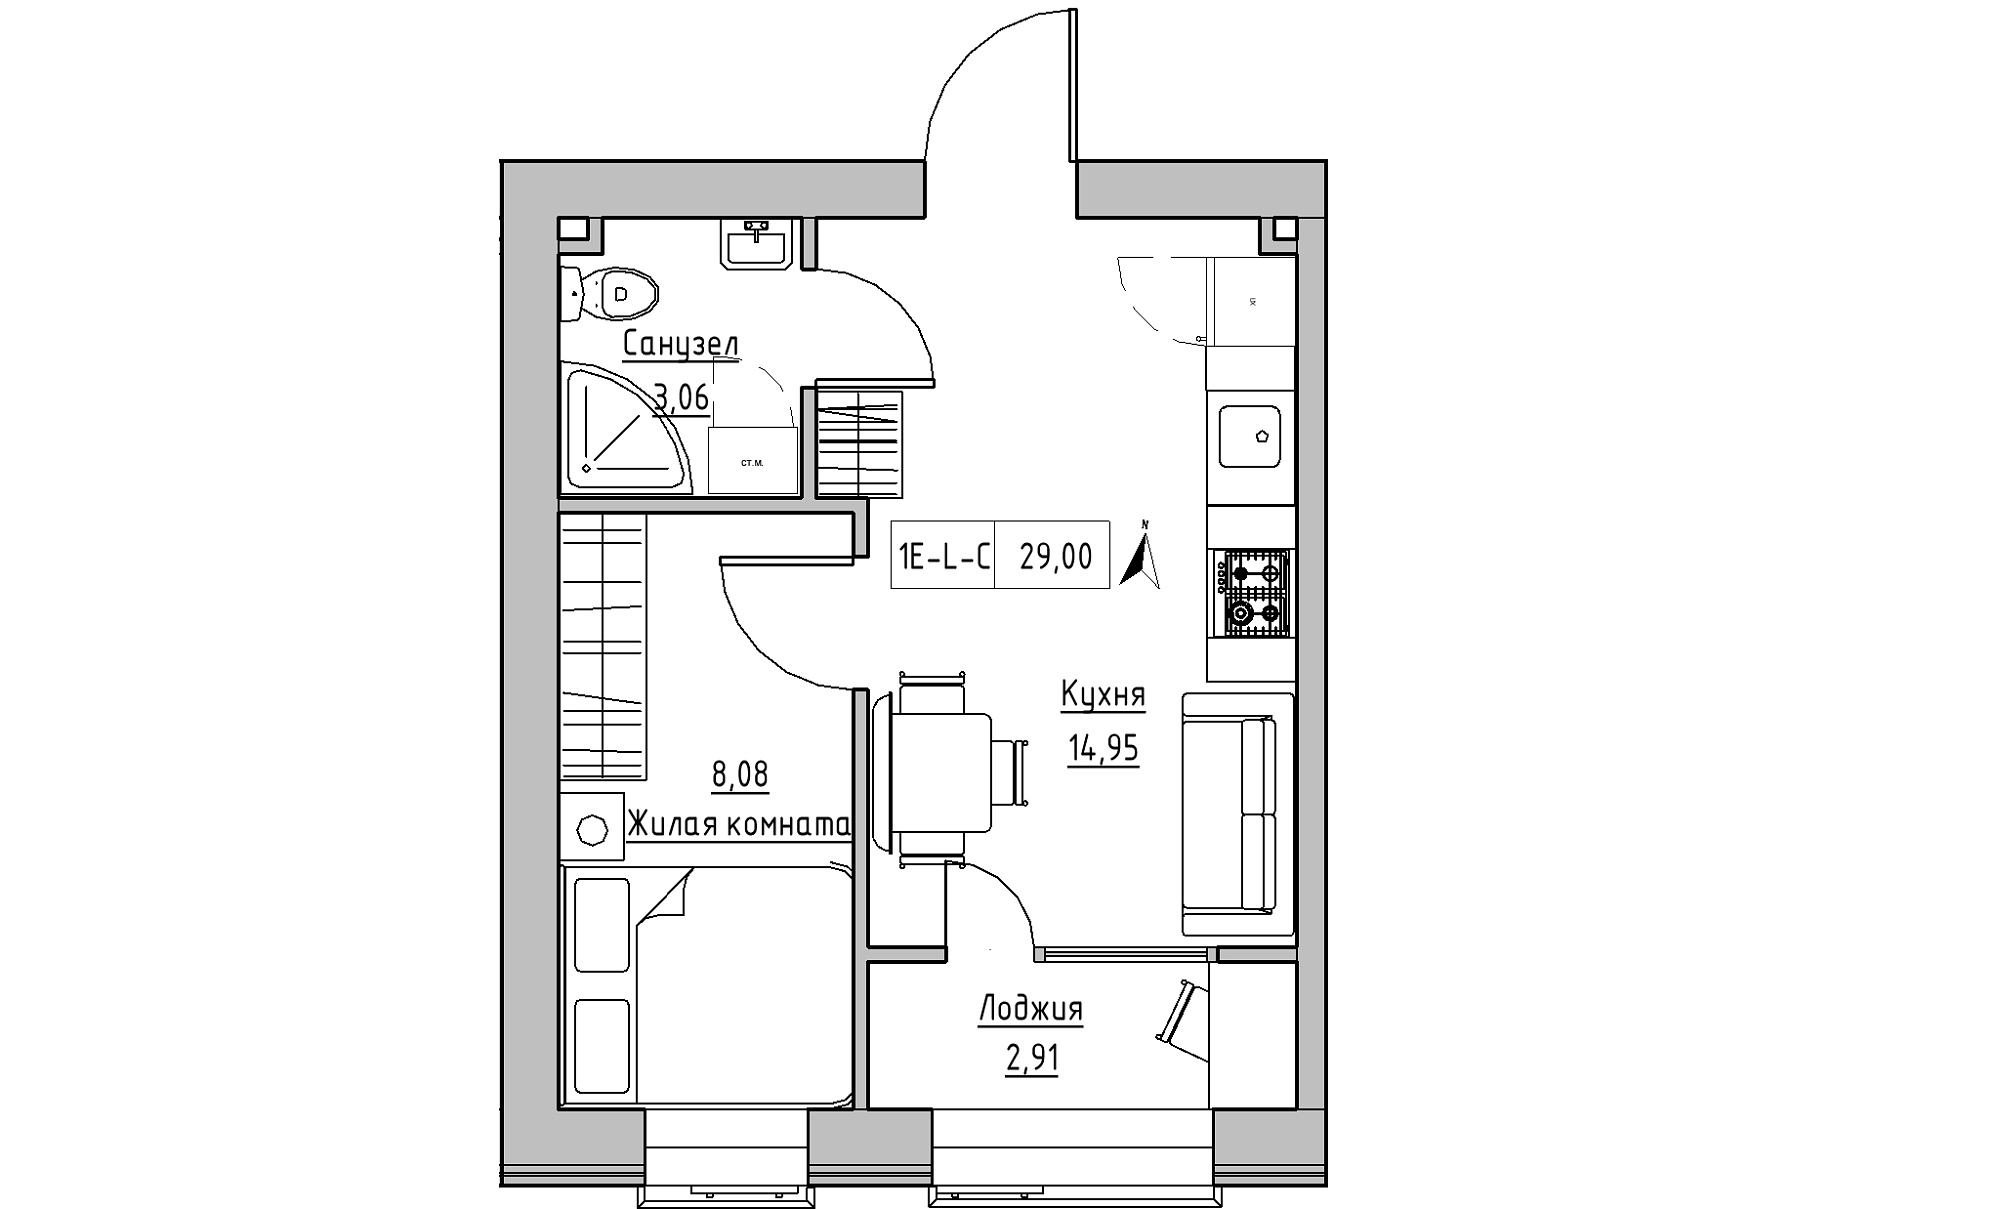 Планування 1-к квартира площею 29м2, KS-016-03/0007.